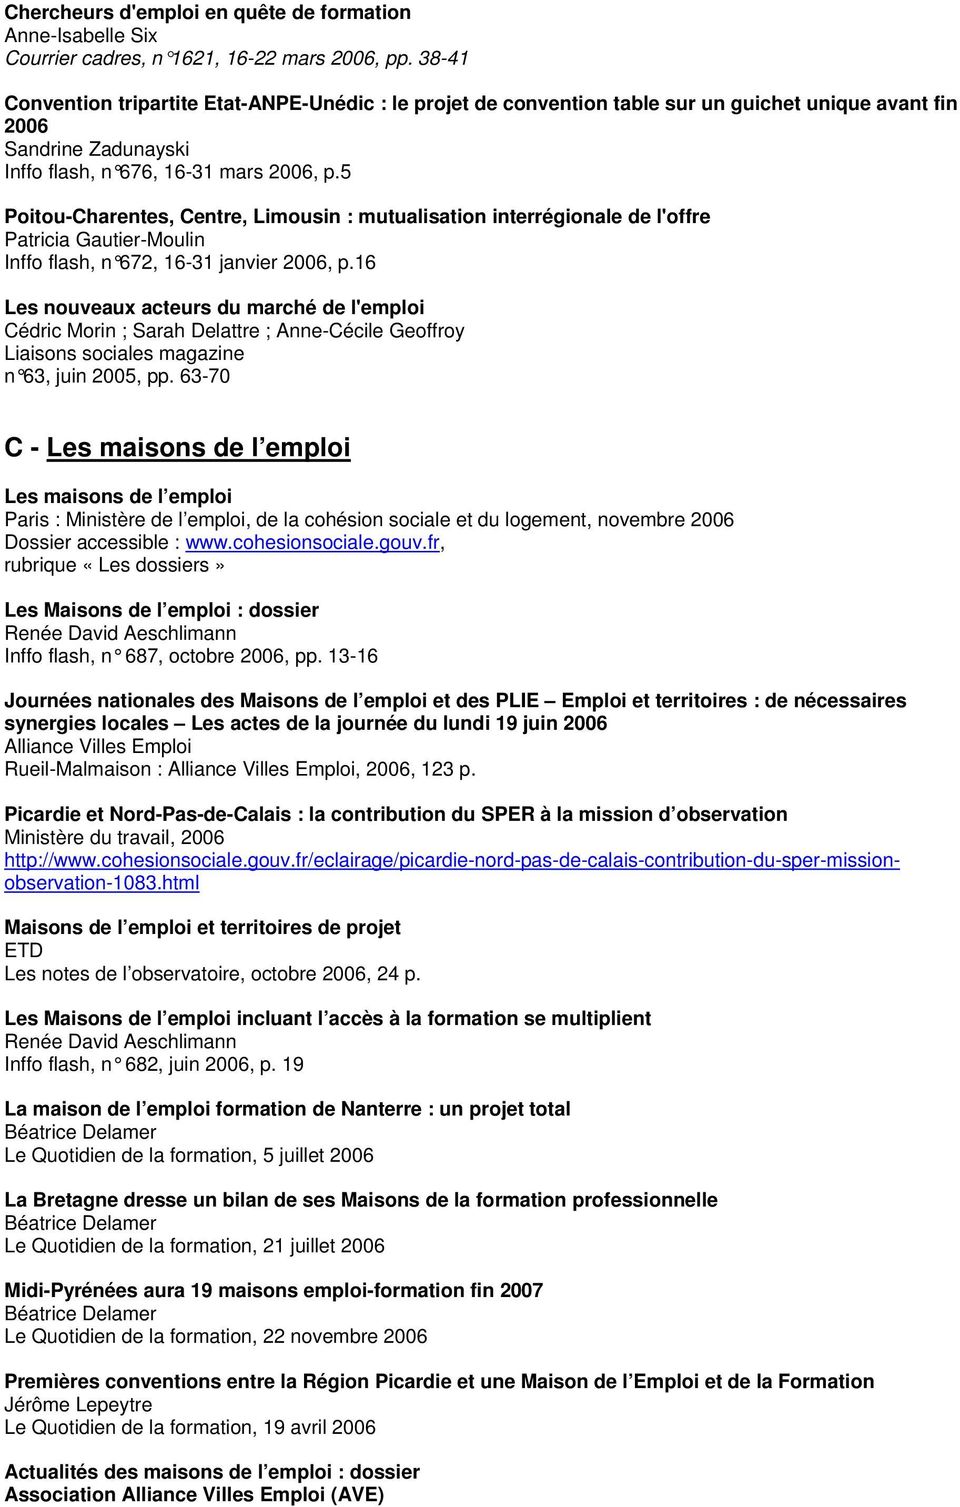 5 Poitou-Charentes, Centre, Limousin : mutualisation interrégionale de l'offre Patricia Gautier-Moulin Inffo flash, n 672, 16-31 janvier 2006, p.